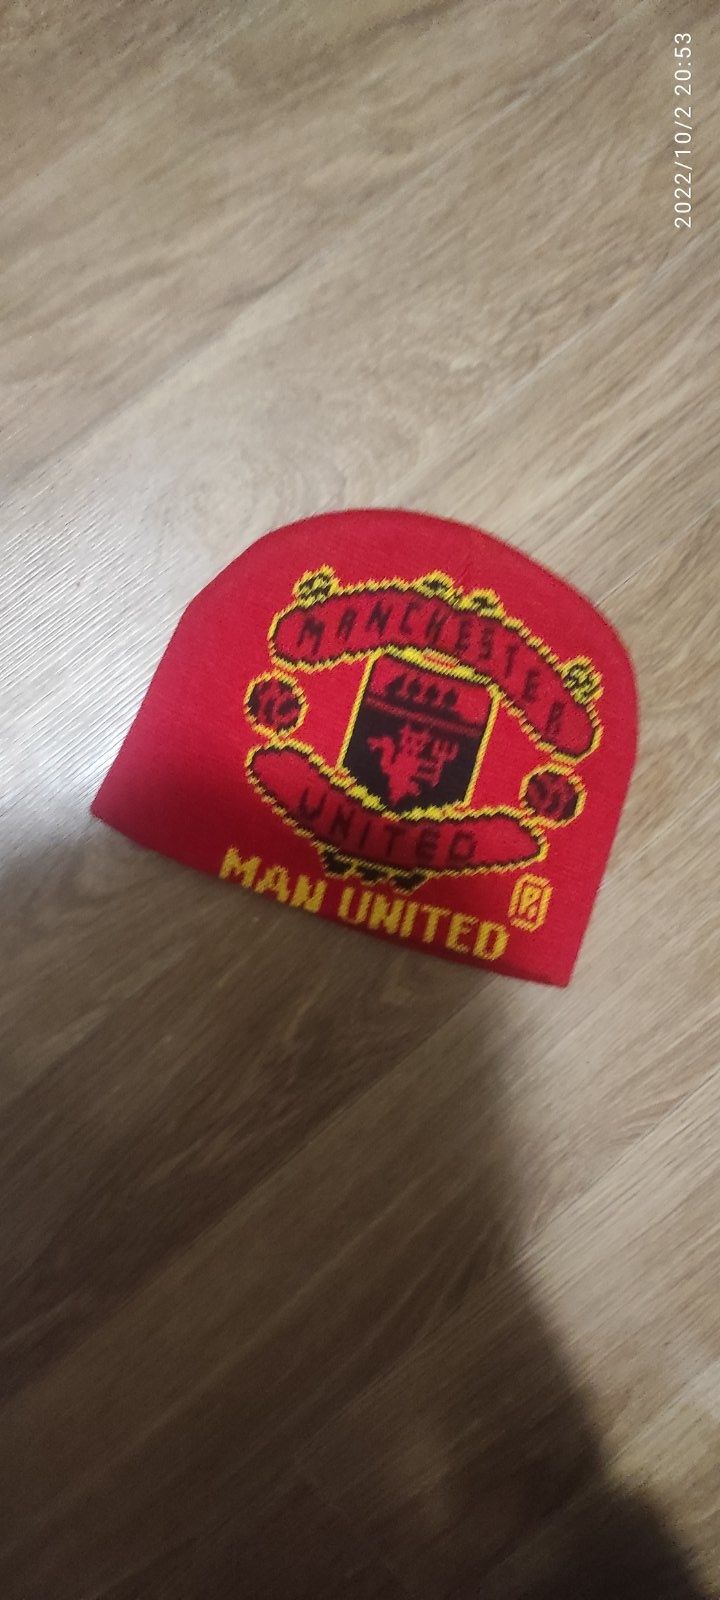 Продаю шапку Manchester United футбольного клуба